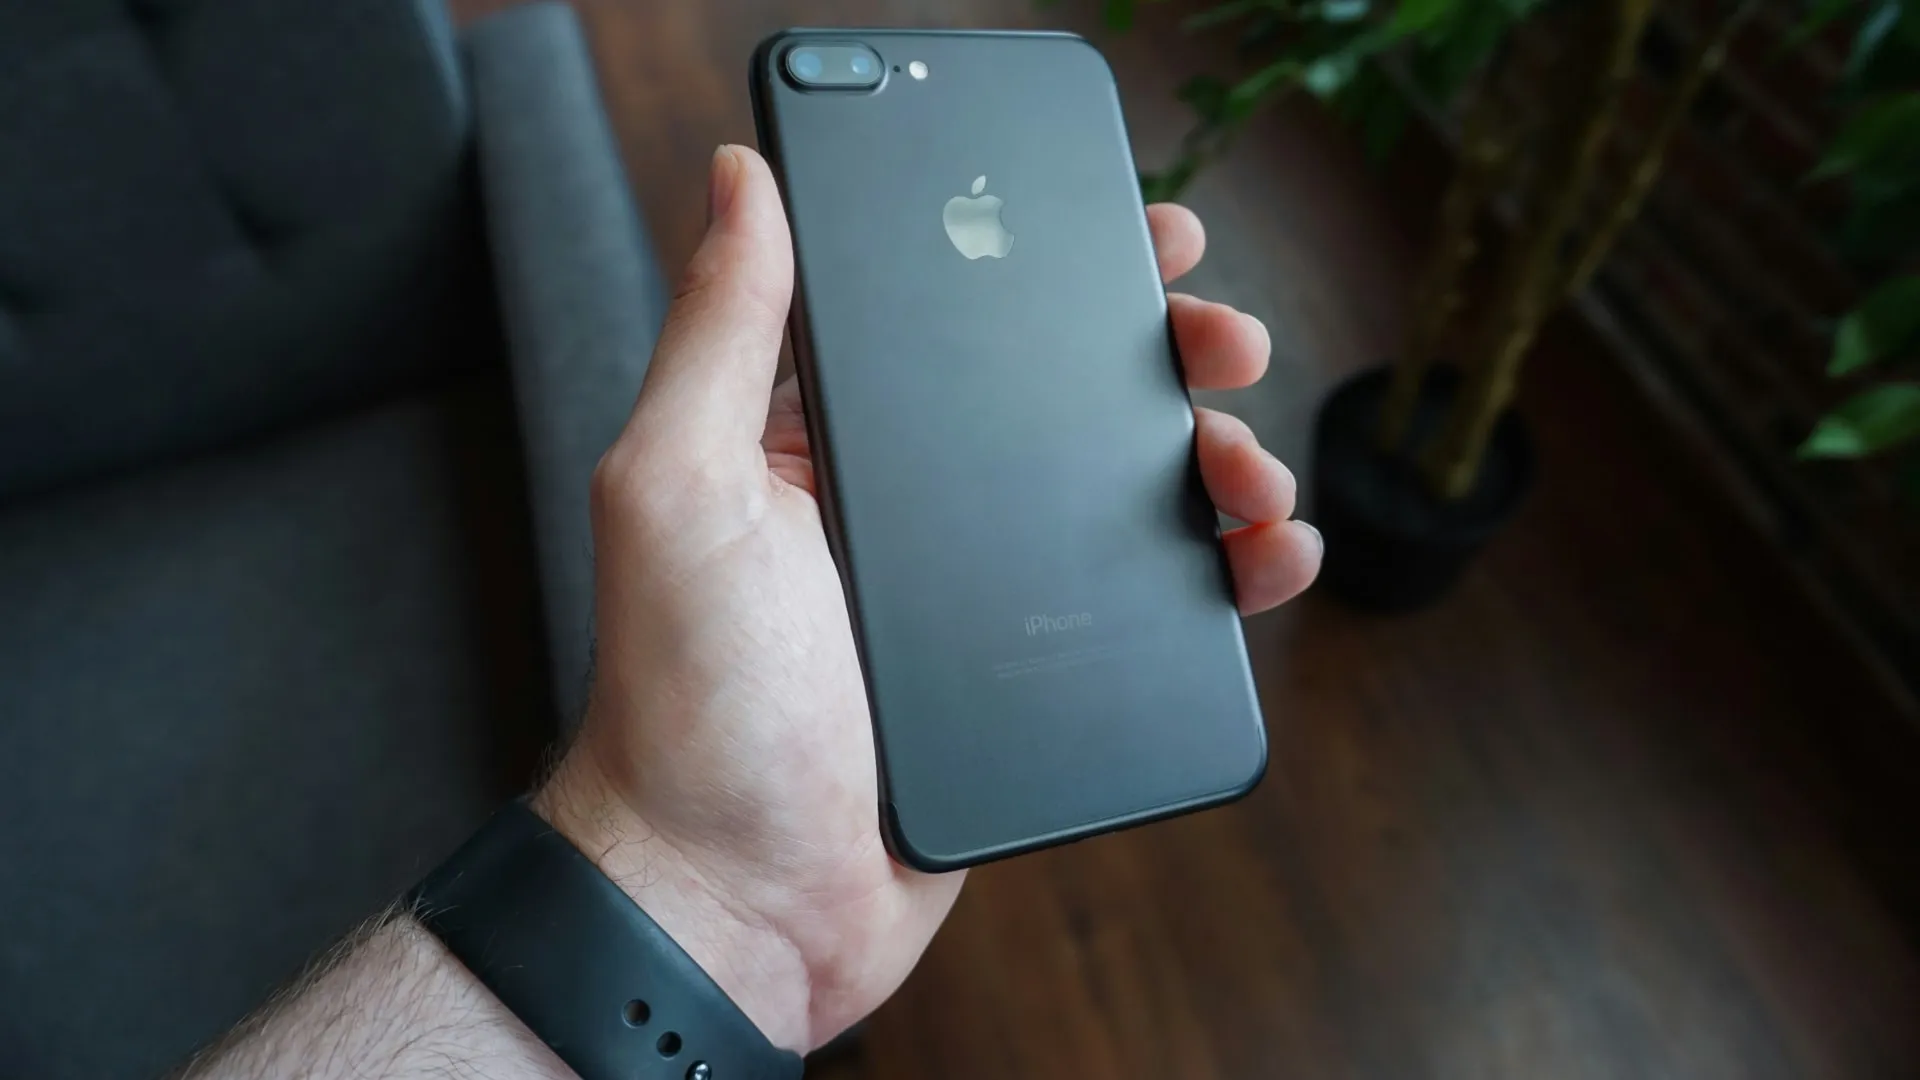 iPhone 7 Plus noir dans la main d'un homme, présentant le système de double caméra arrière